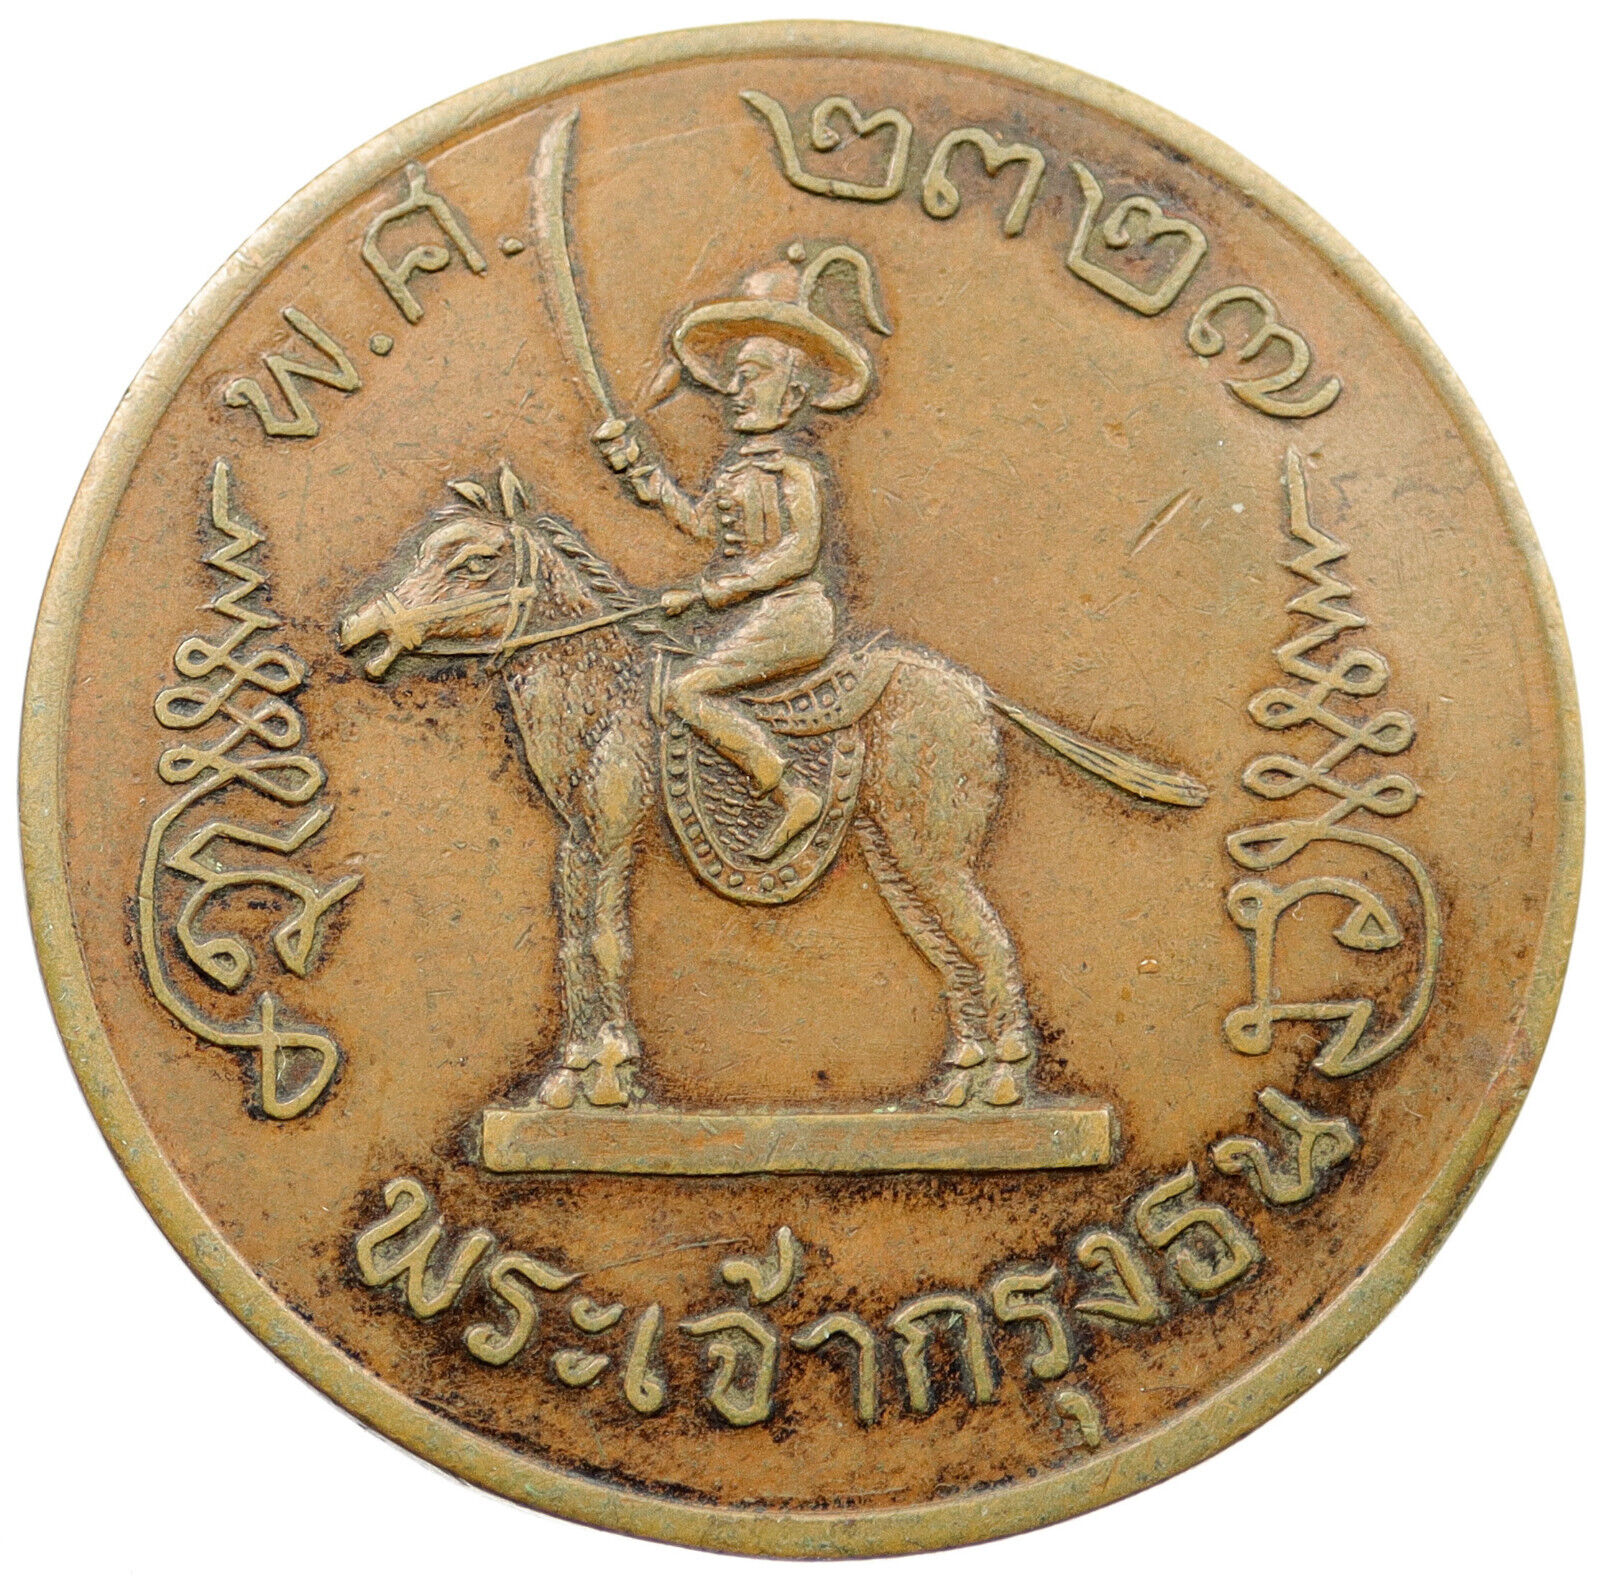 THAILAND Leader on Horseback with Sword LARGE 4.7cm Medal 2327 BE i120271